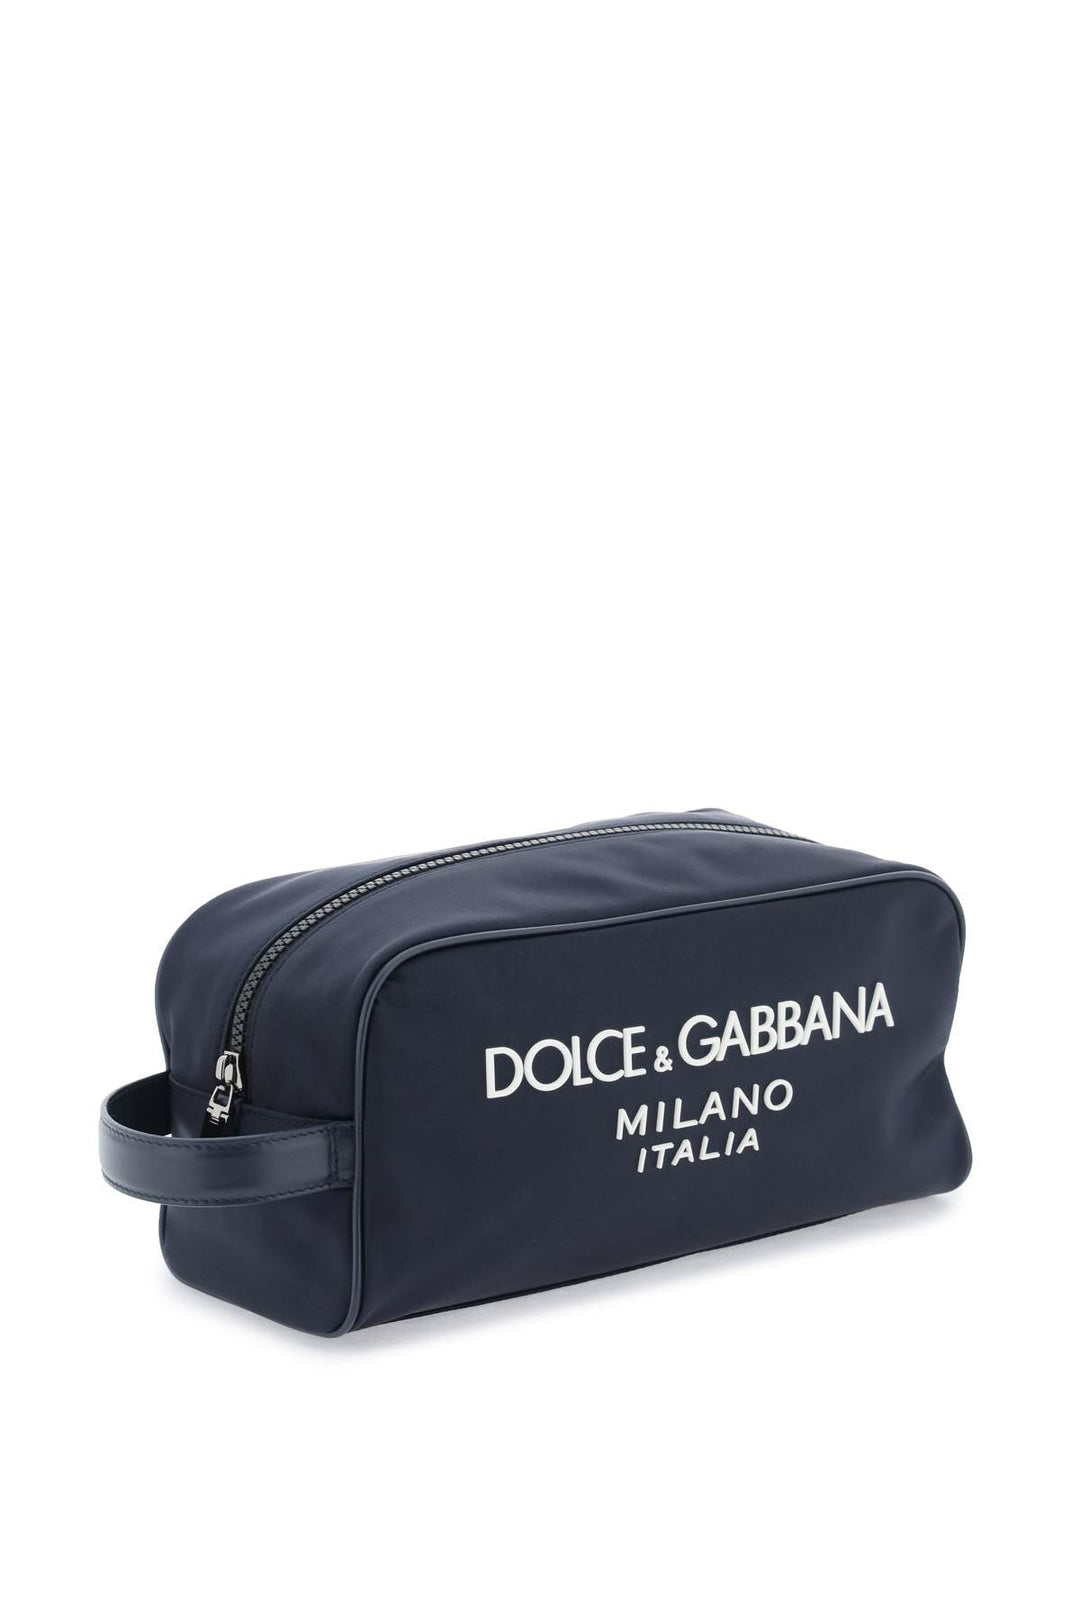 Dolce & Gabbana Rubberized Logo Beauty Case   Blu